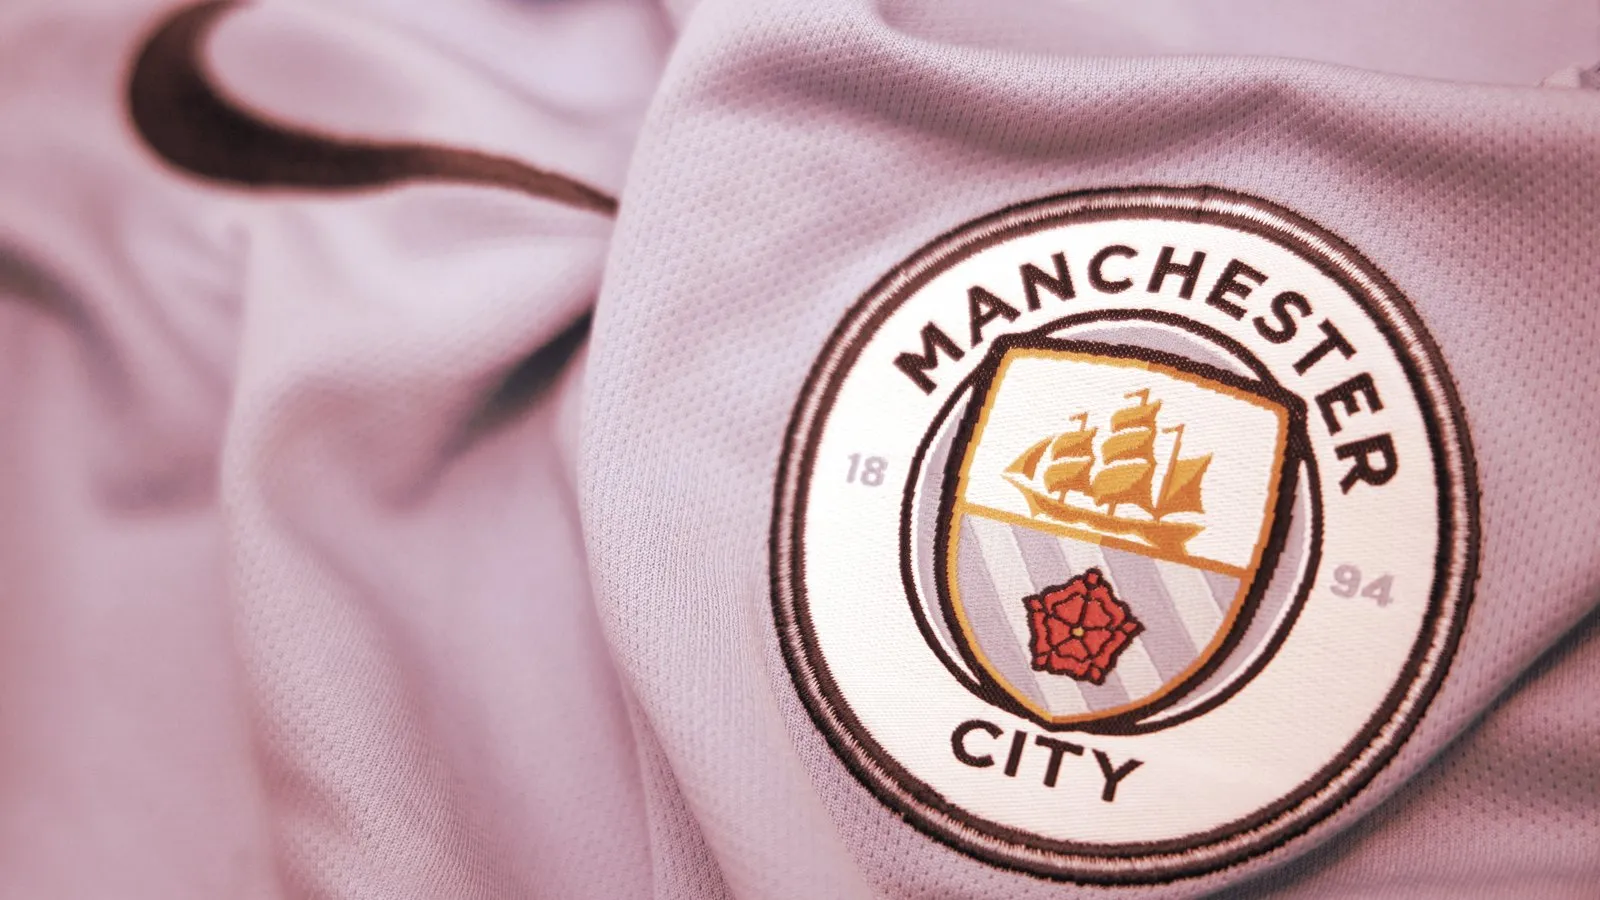 El log del Manchester City Football Club. Imagen: Shutterstock